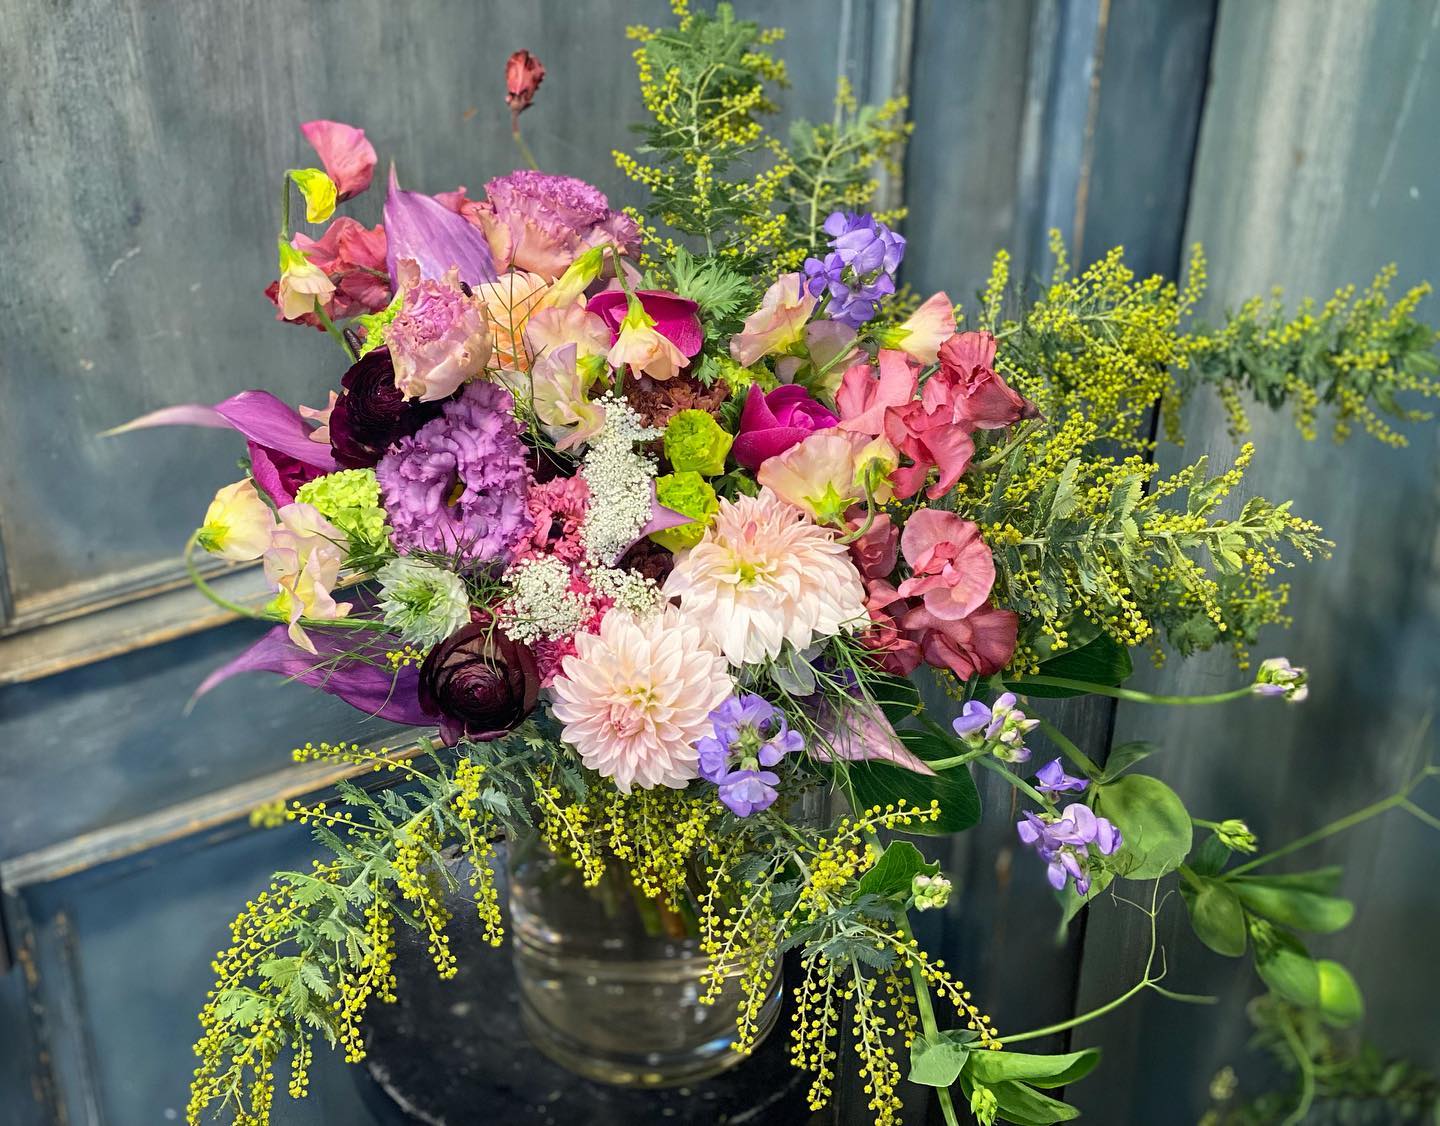 昨日のバレンタインデーはいかがでしたか今年は男性からお花を送る方が多く、とても嬉しい気持ちですPOSYでは春のお花たちが皆様を出迎えます♪♪本日もご来店お待ちしてます。2/17(木)2/18(金)2/19(土)は休業です。ご了承ください。電話、メール、ウェブサイトでご注文できます。.︎ 052-261-8791︎ kazuto@posy-nagoya.co.jp.